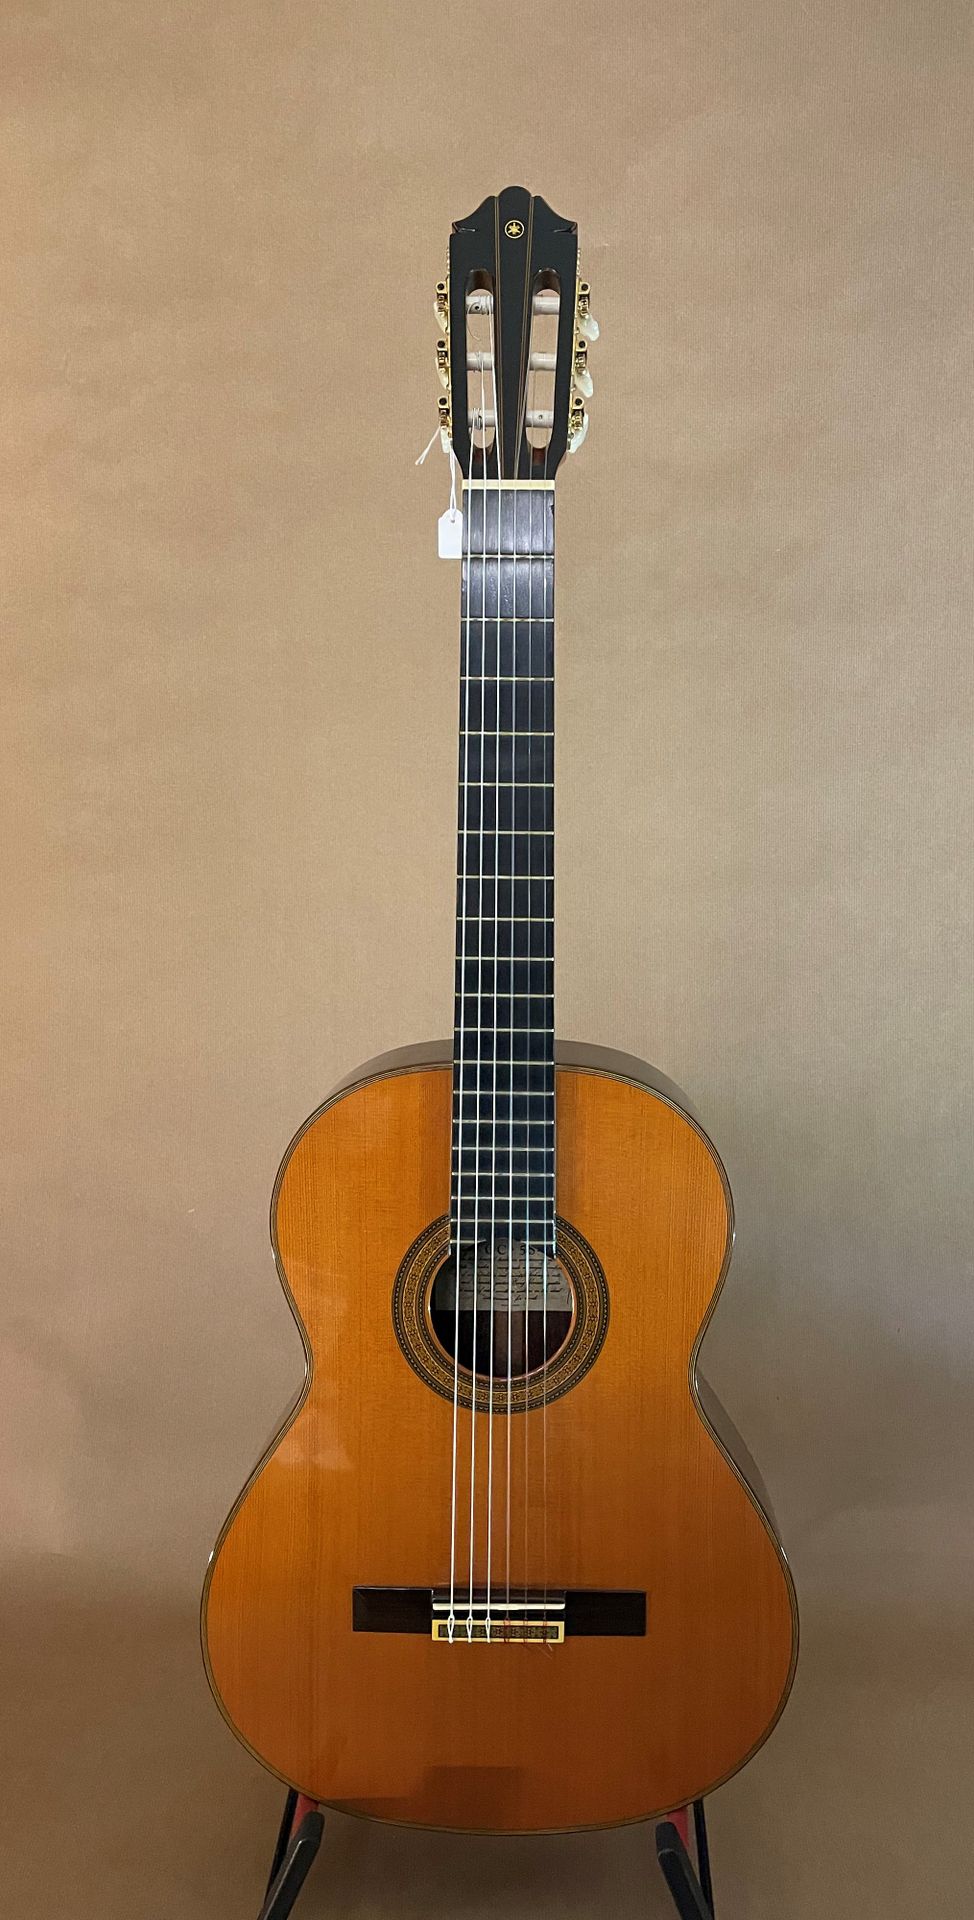 Null 雅马哈古典吉他1978年的型号GC-5S，标签号A3841

弦长660毫米，螺母间距51毫米

杉木面板。黑檀木背板和侧板

状况良好。准备开始游戏&hellip;